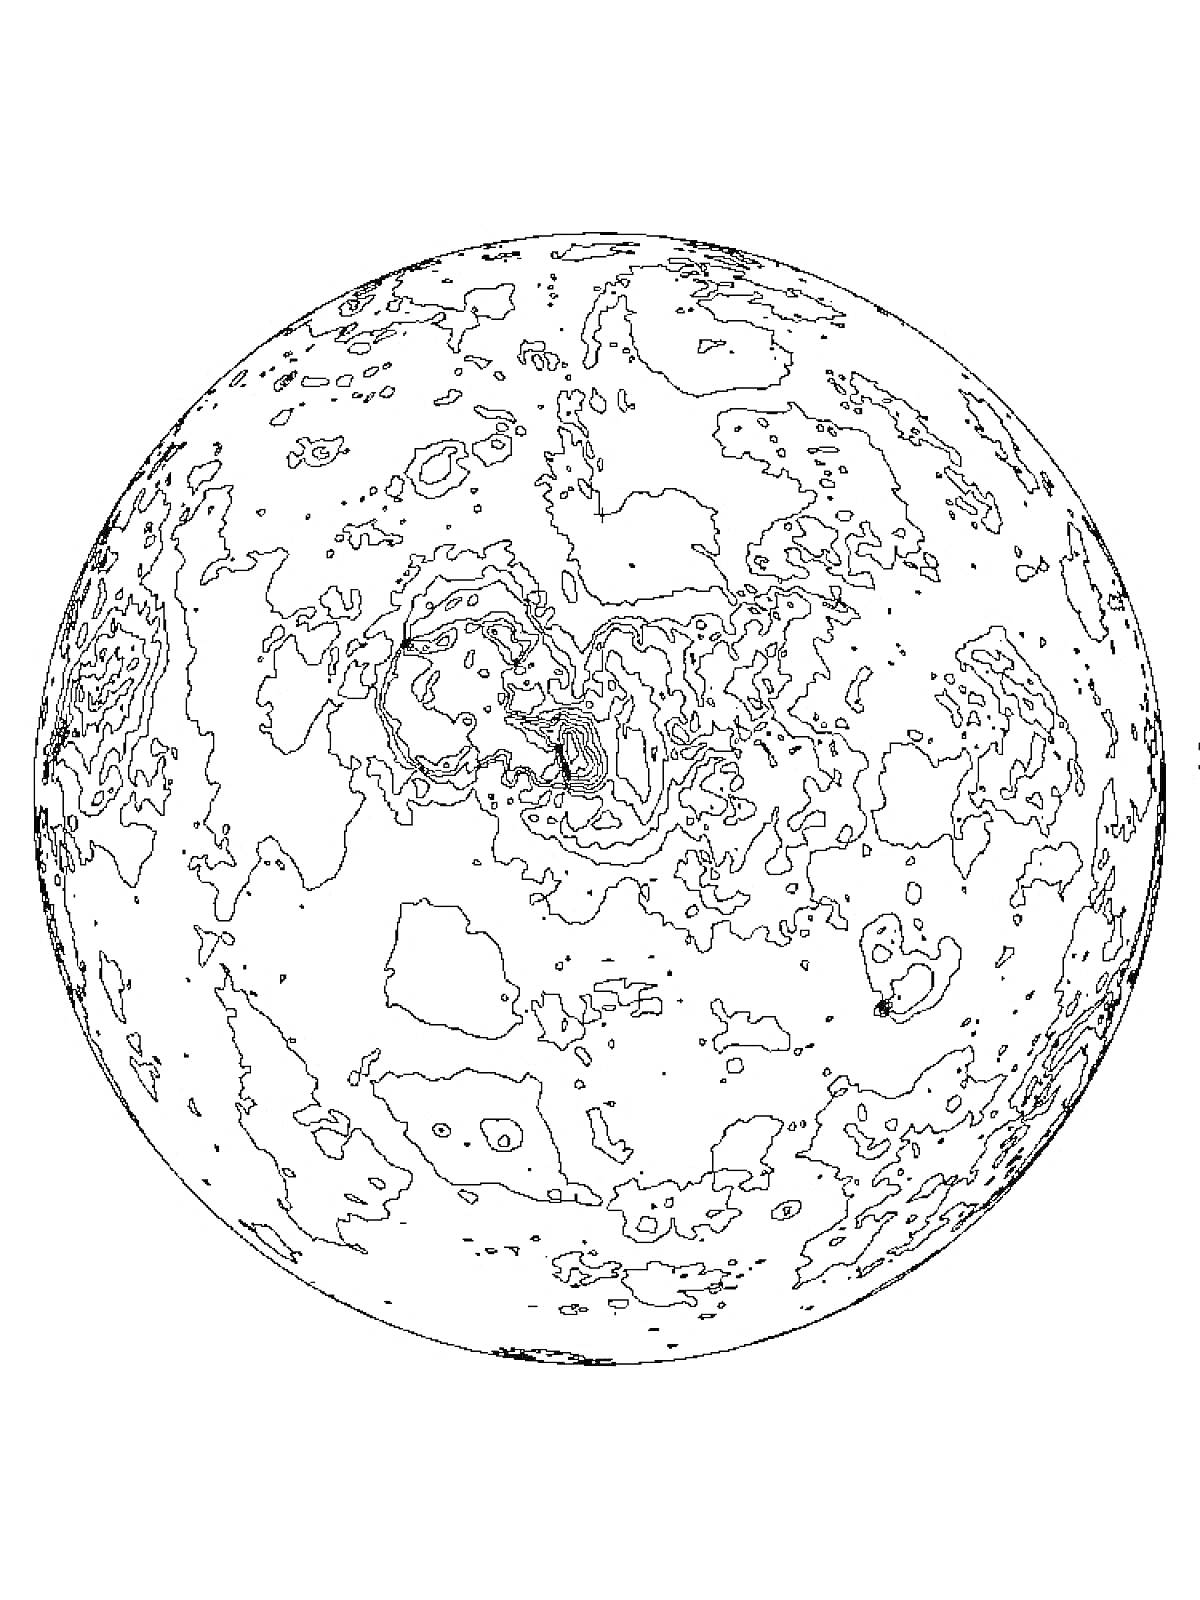 Раскраска Планета с кратерами и гористой поверхностью